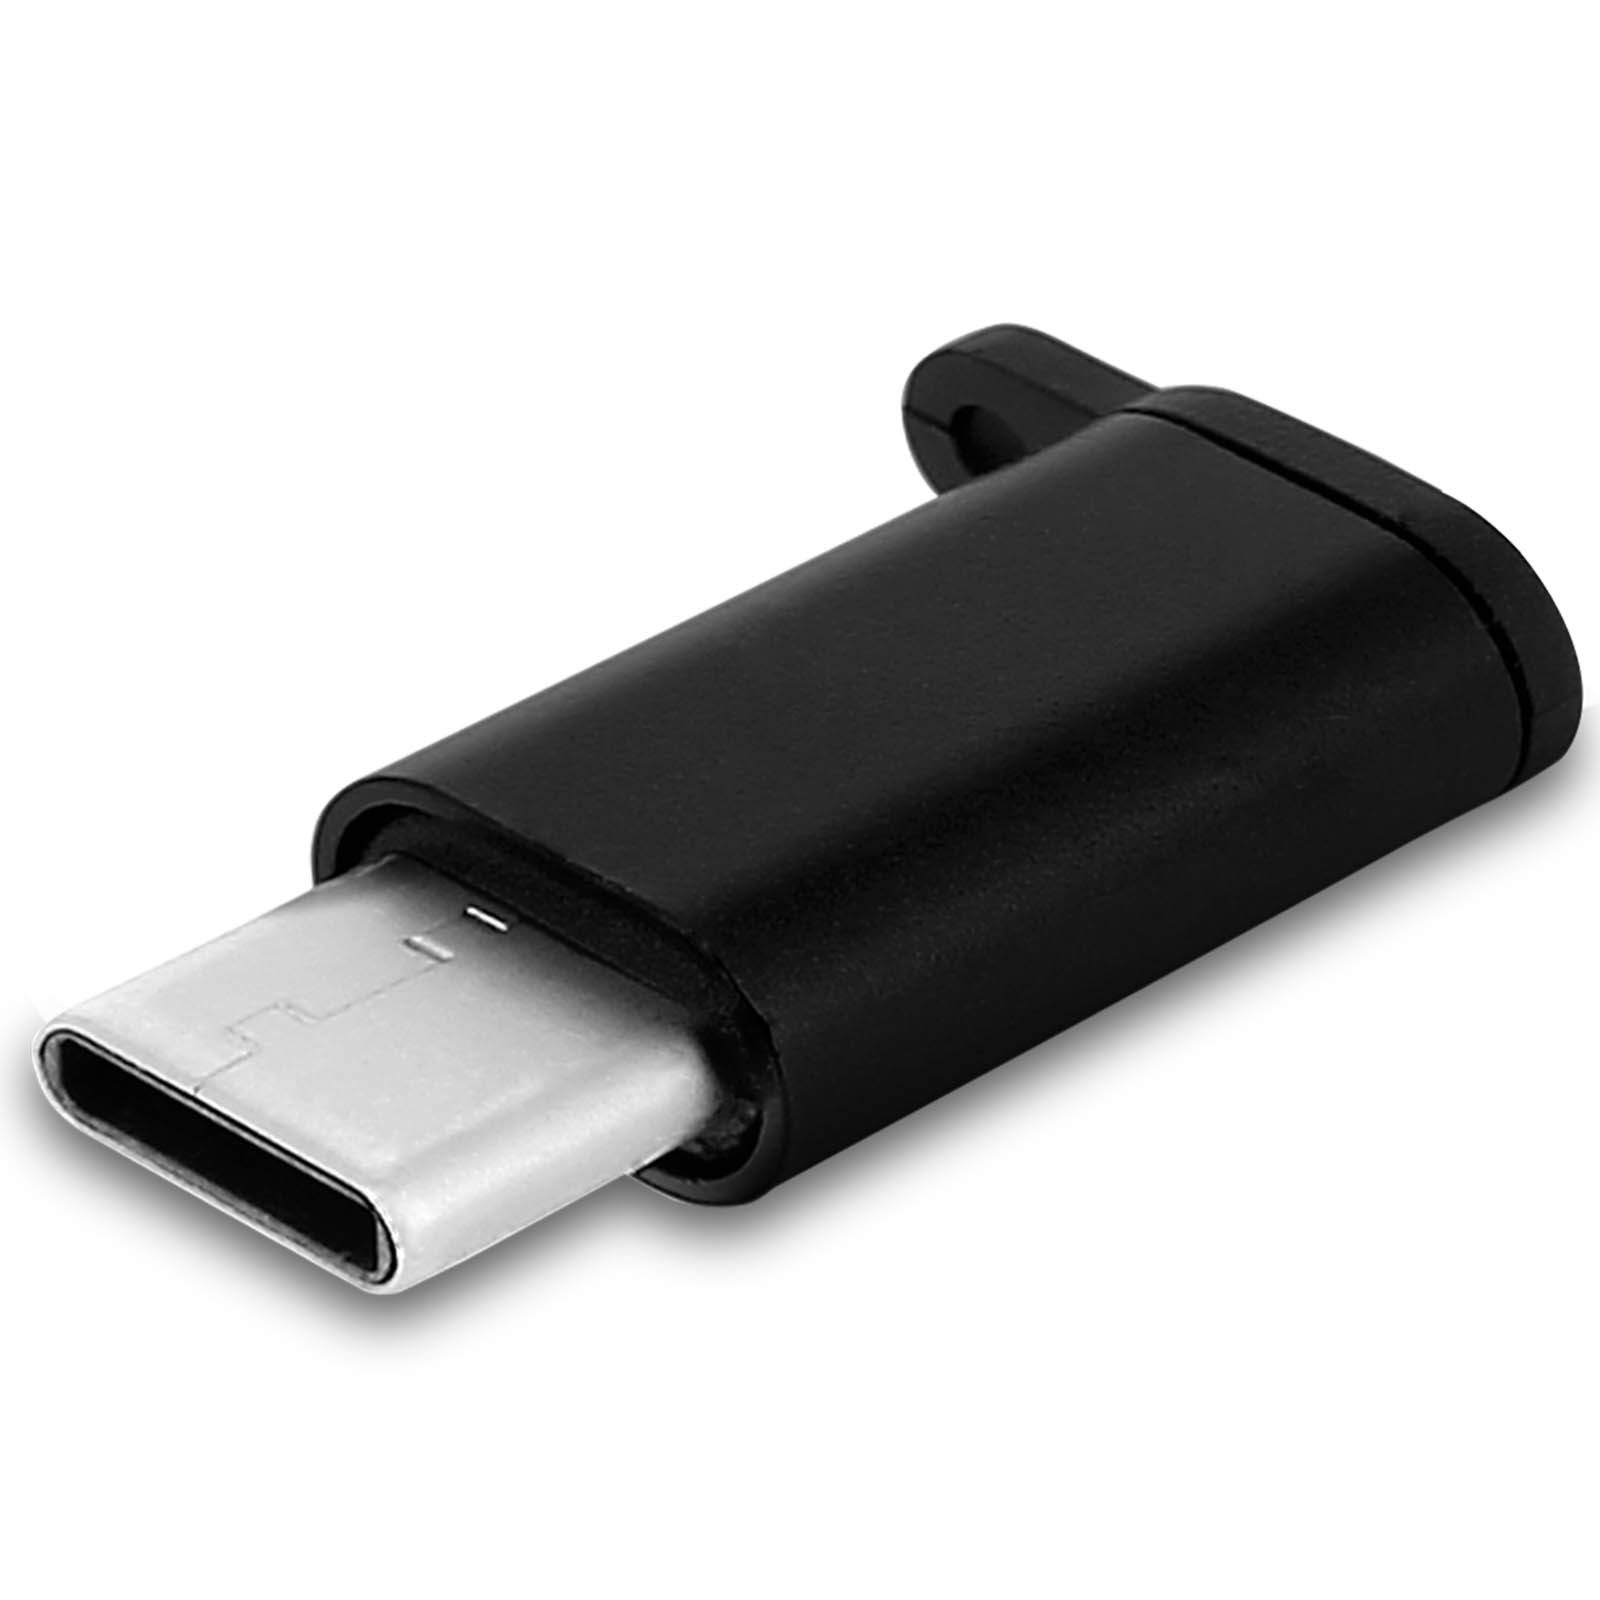 Adaptateur micro USB vers USC C monobloc noir - prix pas cher chez